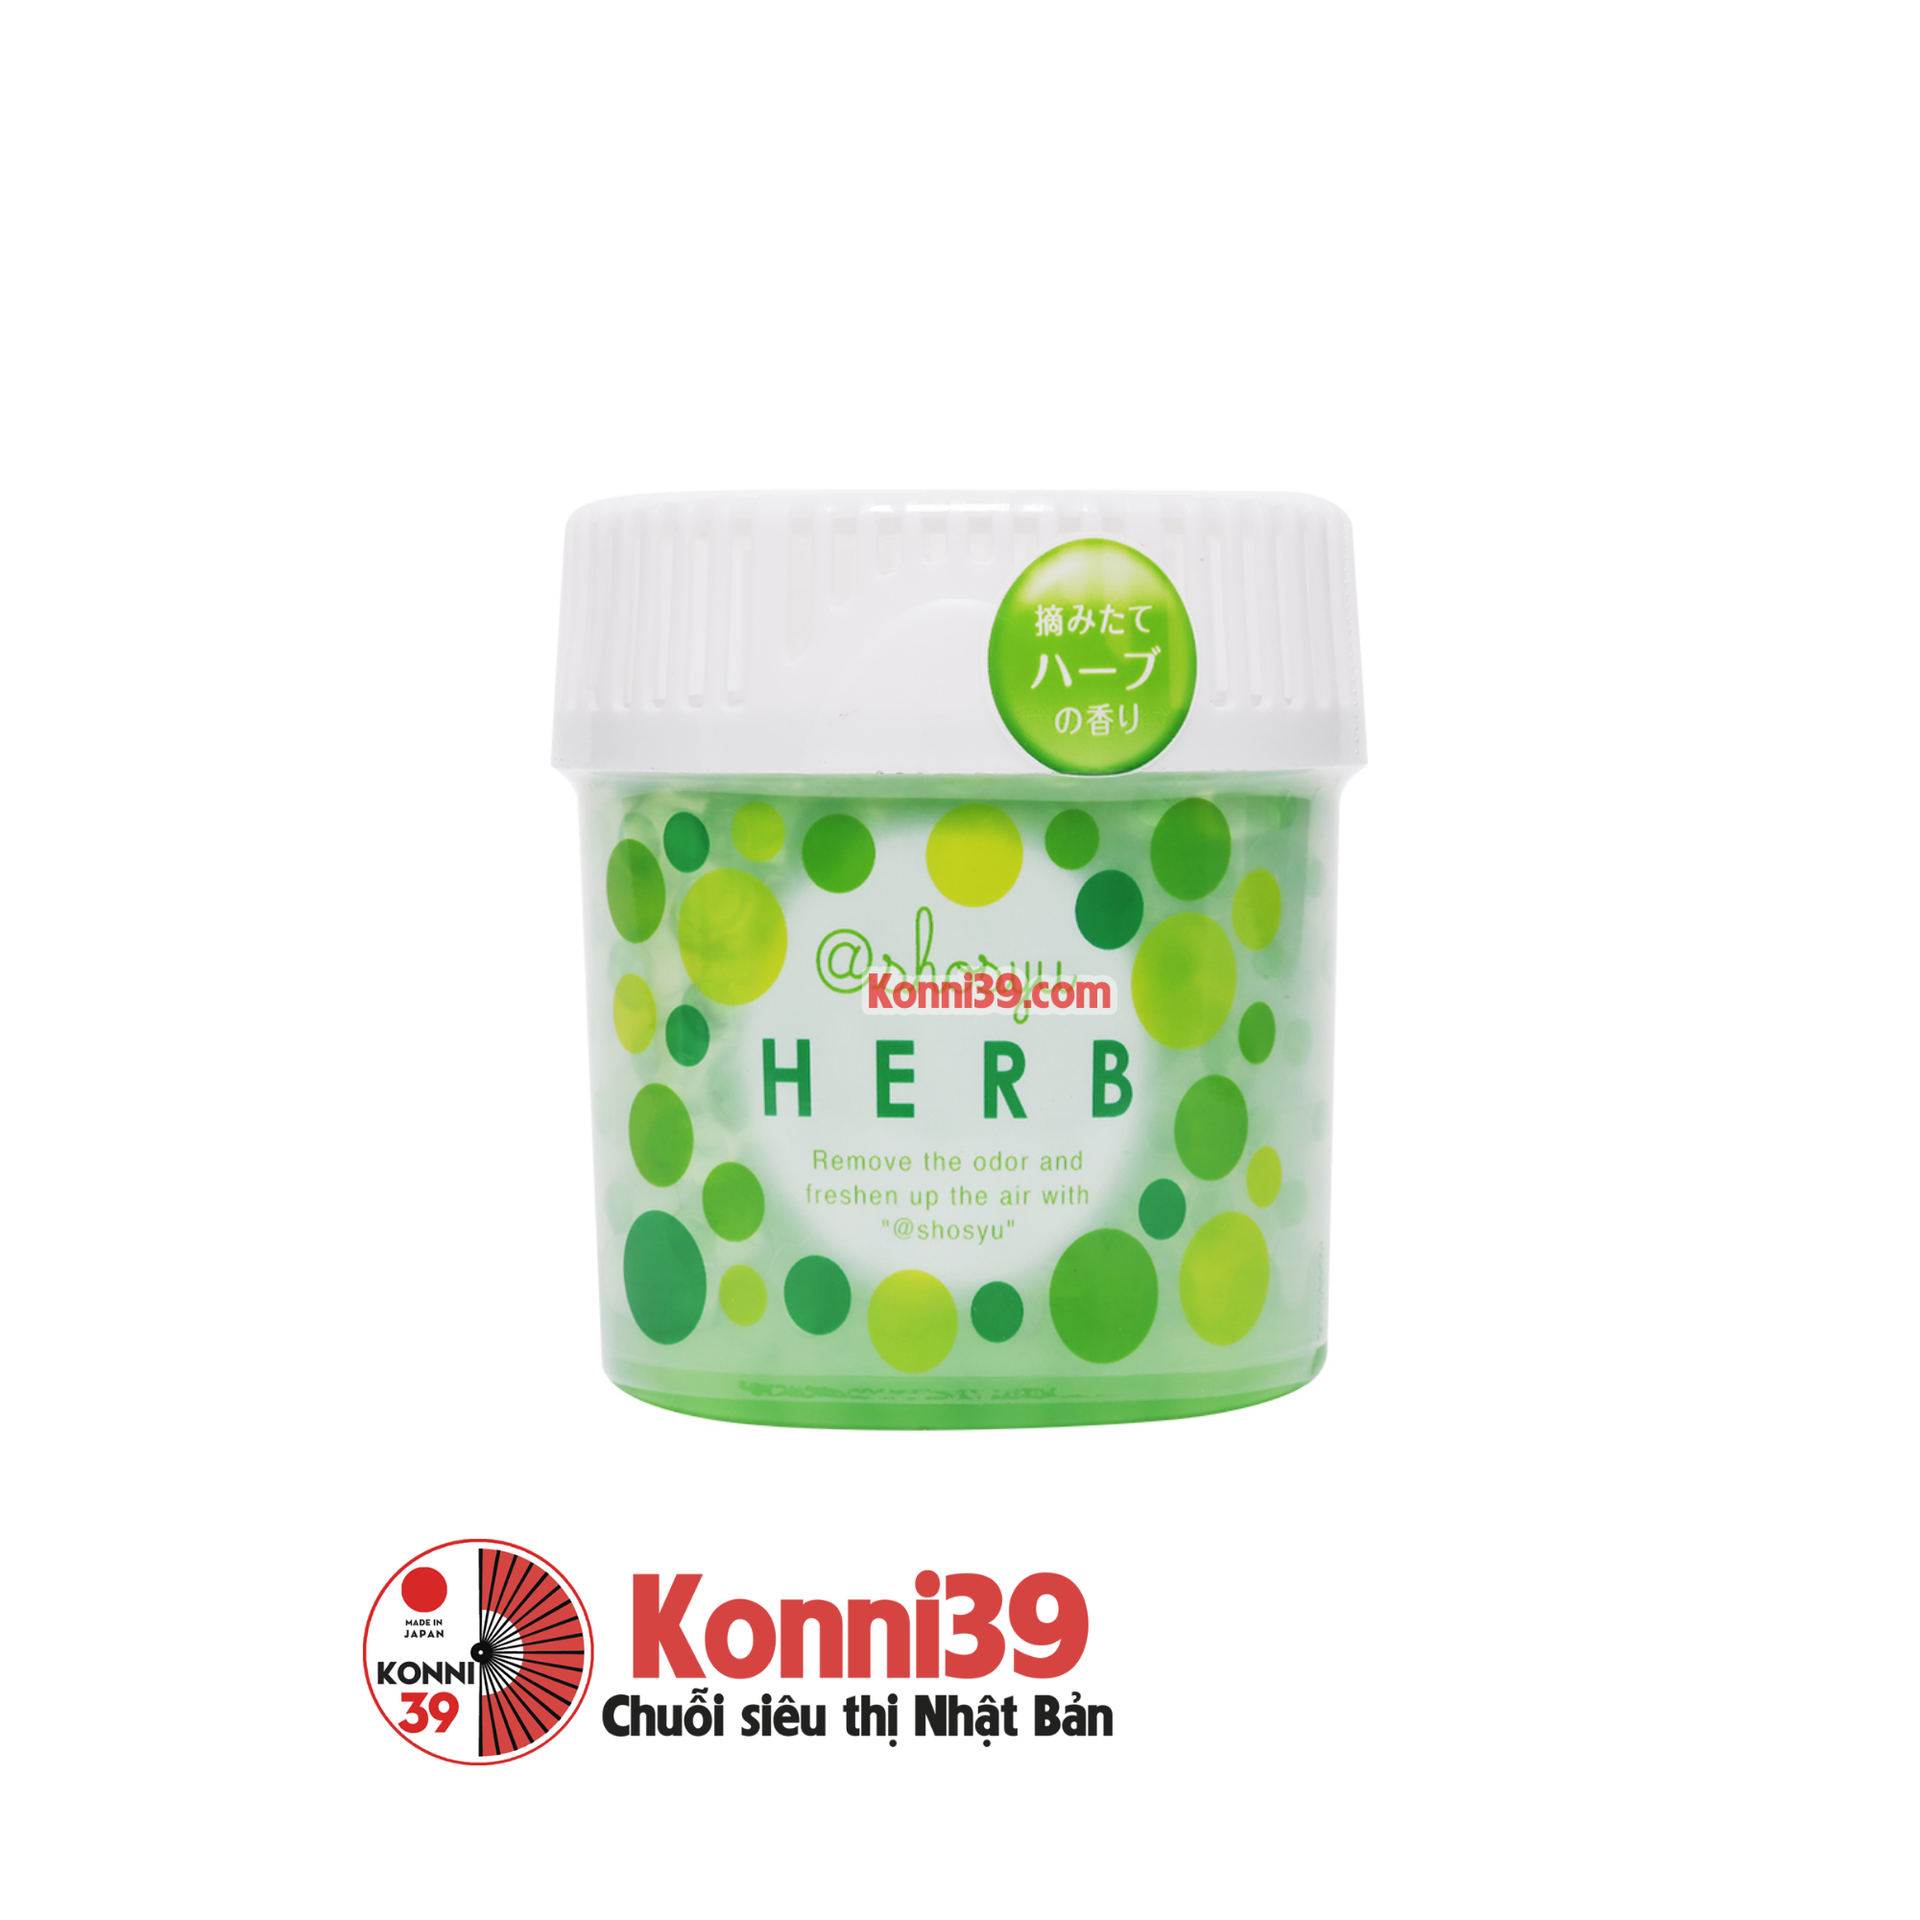 Sáp khử mùi 150g KOKUBO (herb)-Chuỗi siêu thị Nhật Bản - MADE IN JAPAN Konni39 tại Việt Nam